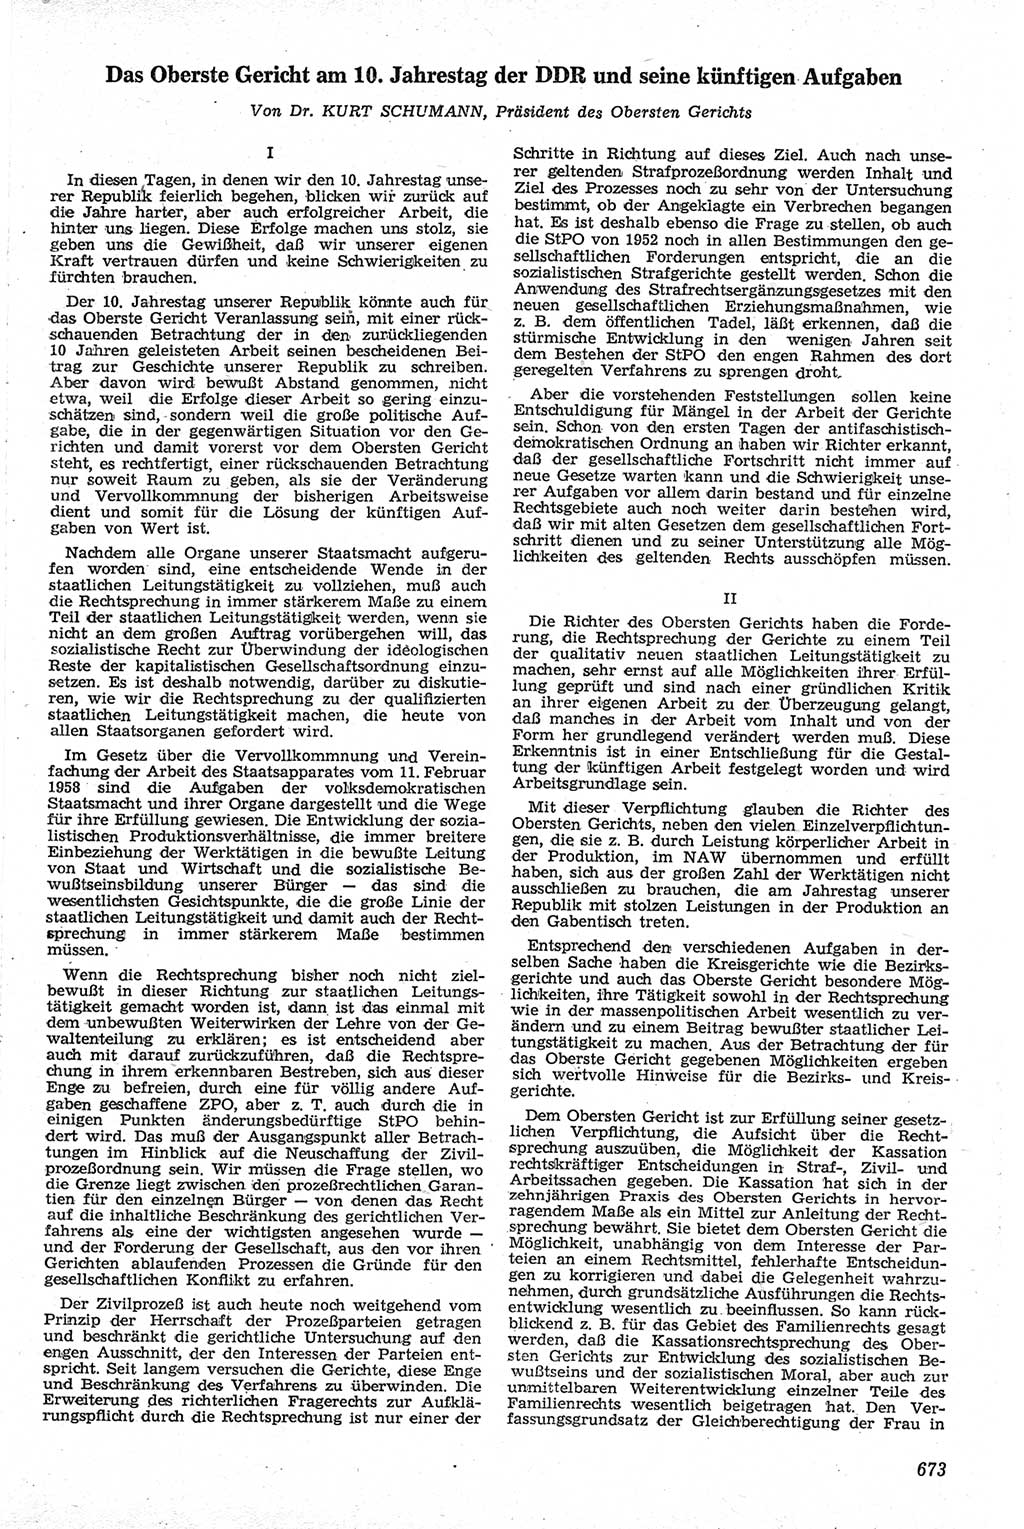 Neue Justiz (NJ), Zeitschrift für Recht und Rechtswissenschaft [Deutsche Demokratische Republik (DDR)], 13. Jahrgang 1959, Seite 673 (NJ DDR 1959, S. 673)